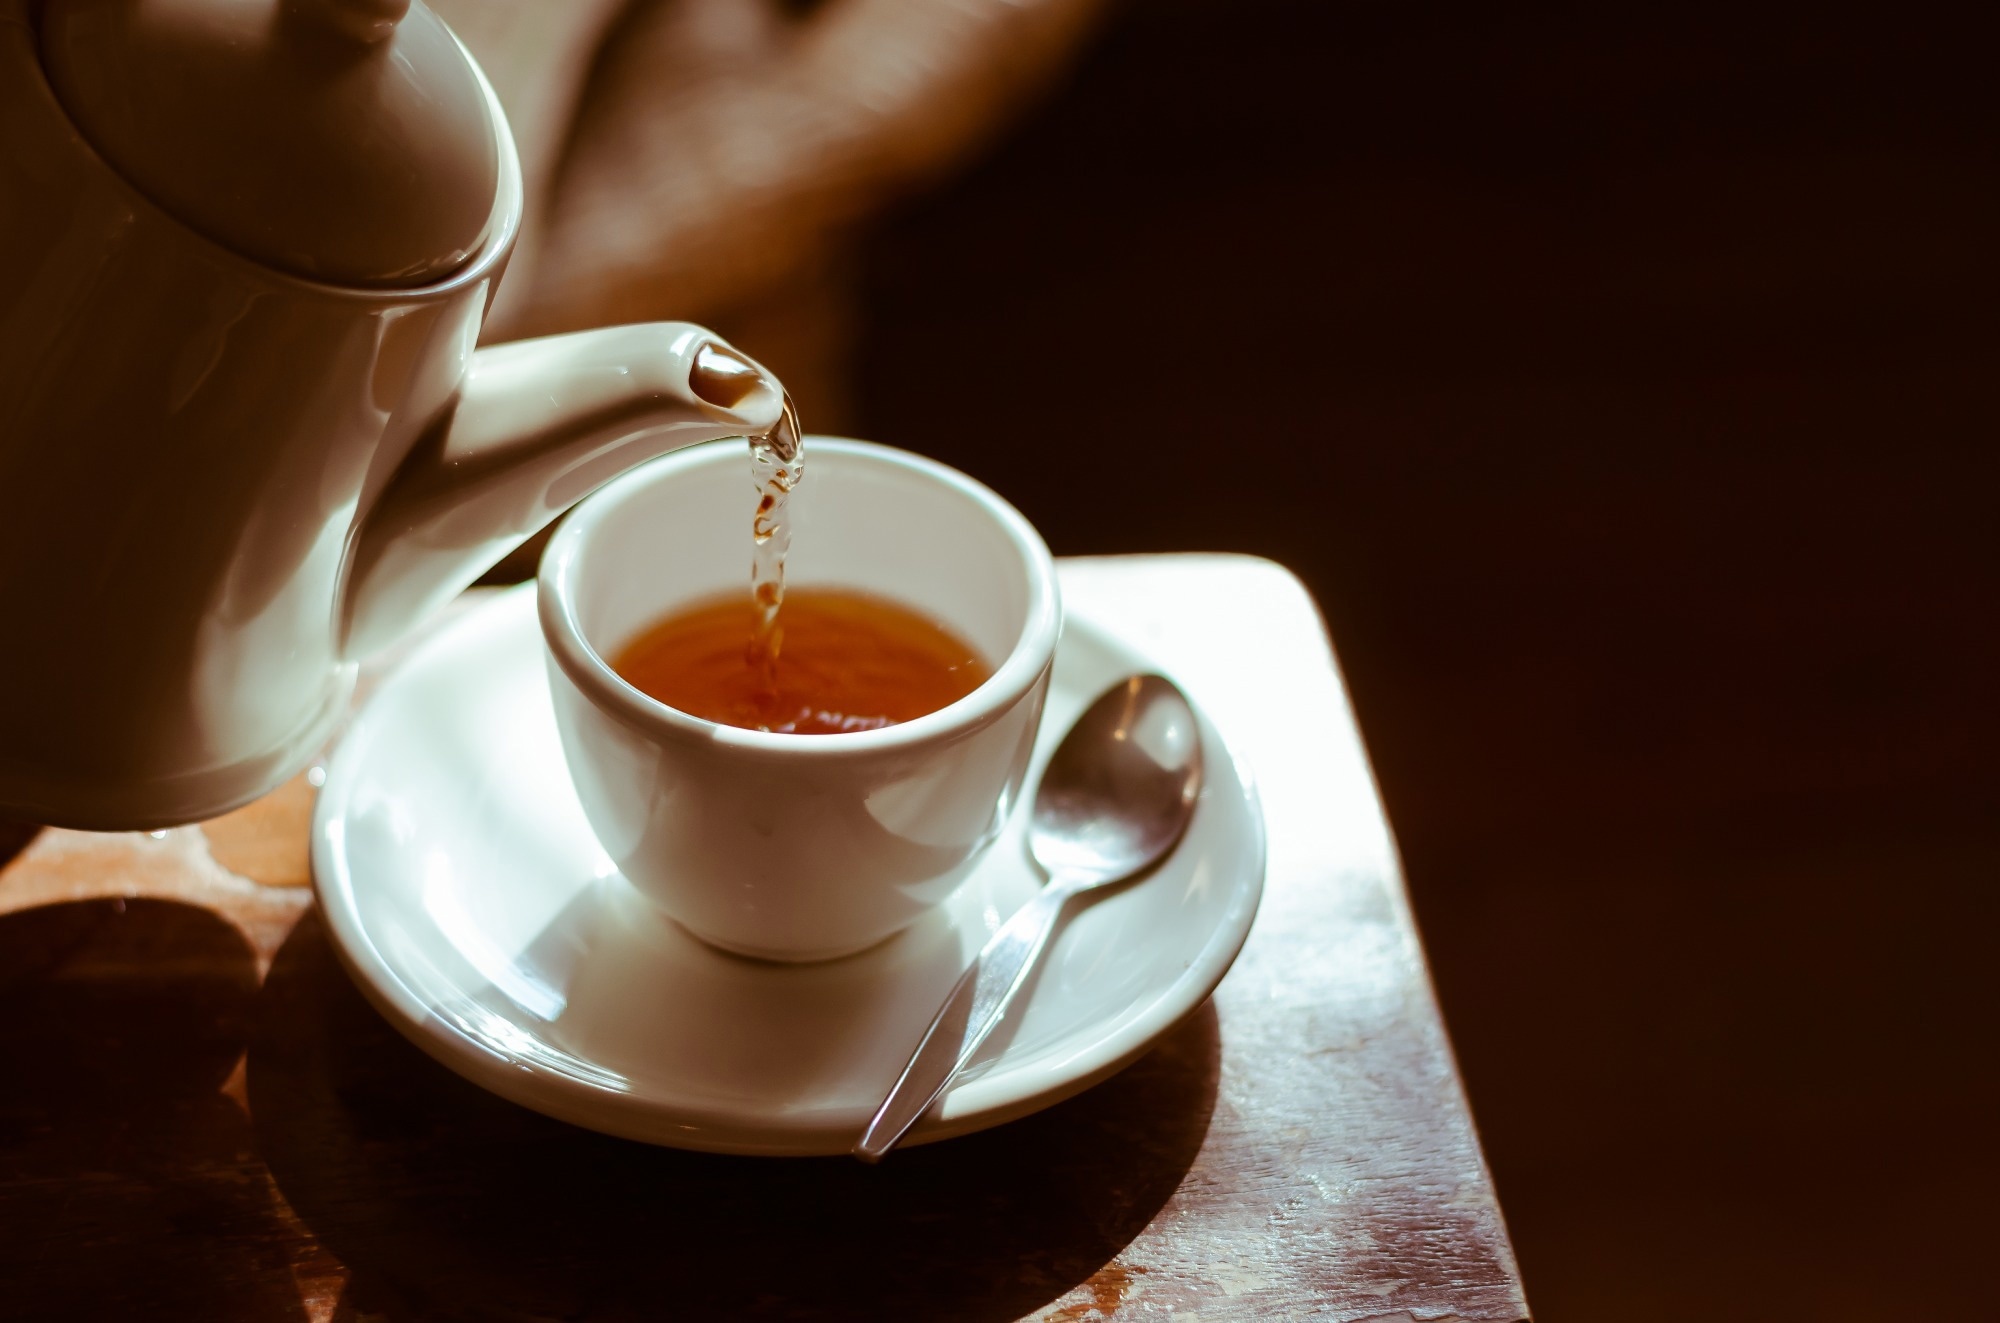 El consumo de té aumenta la densidad ósea y reduce el riesgo de osteoporosis